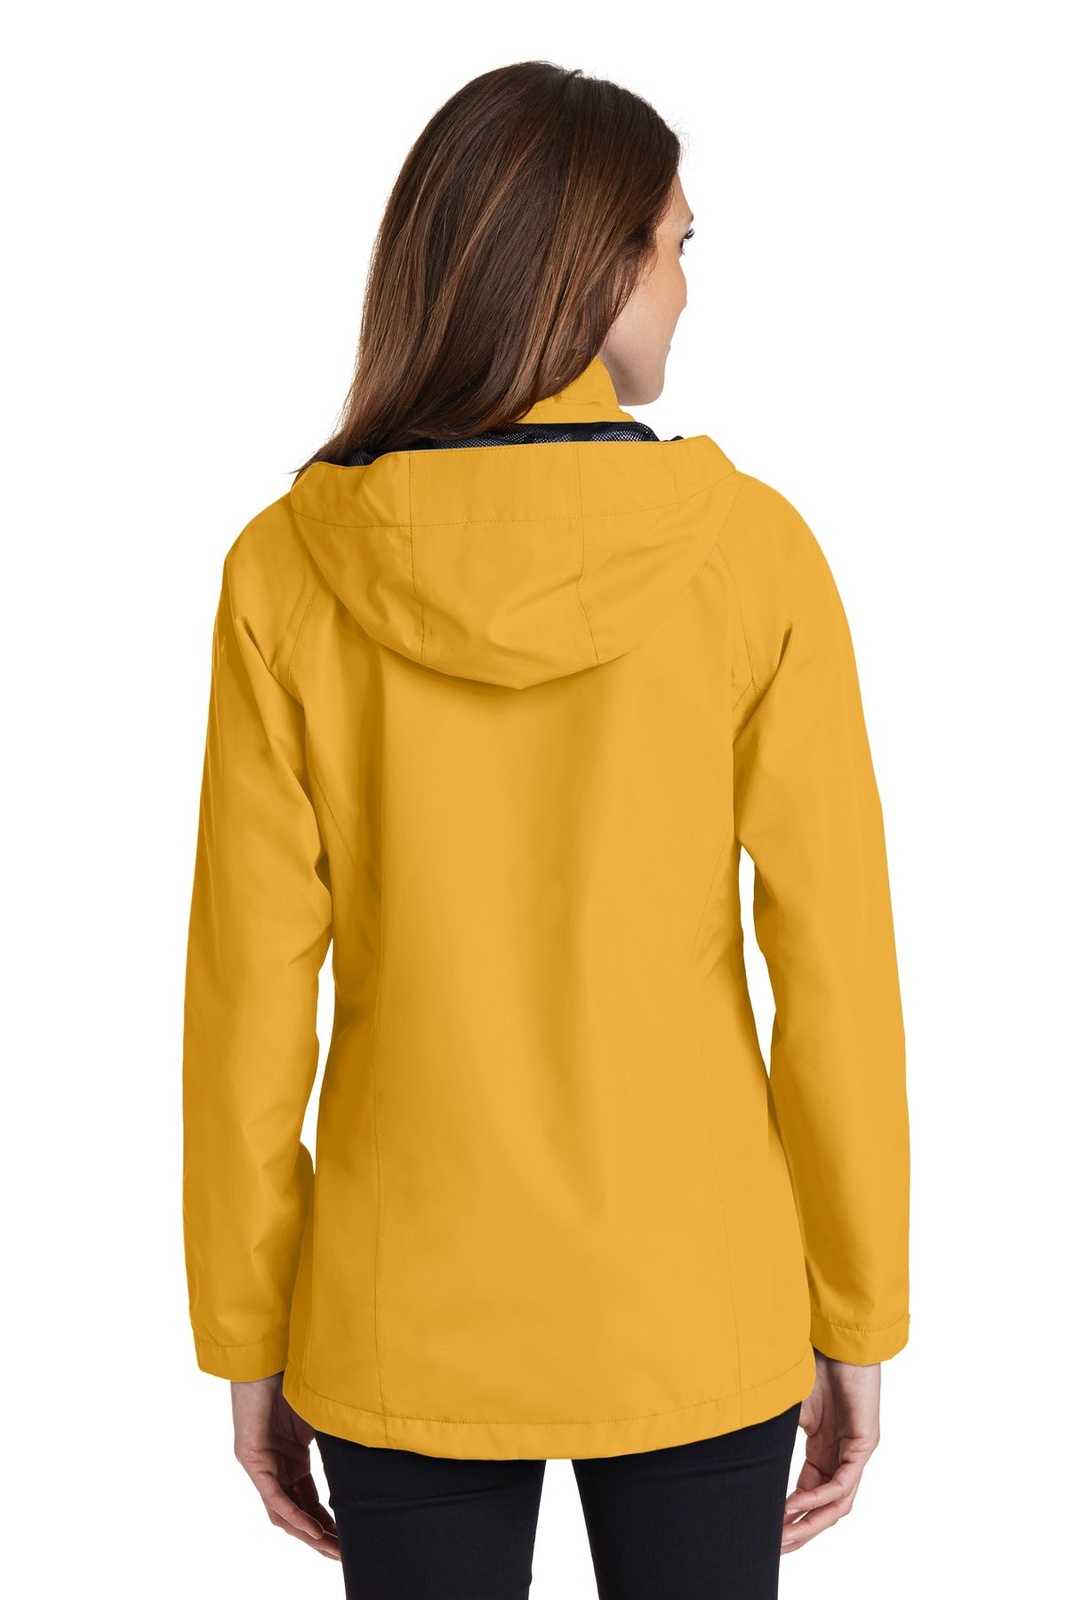 Port Authority L333 Ladies Torrent Waterproof Jacket - Slicker Yellow - HIT a Double - 1